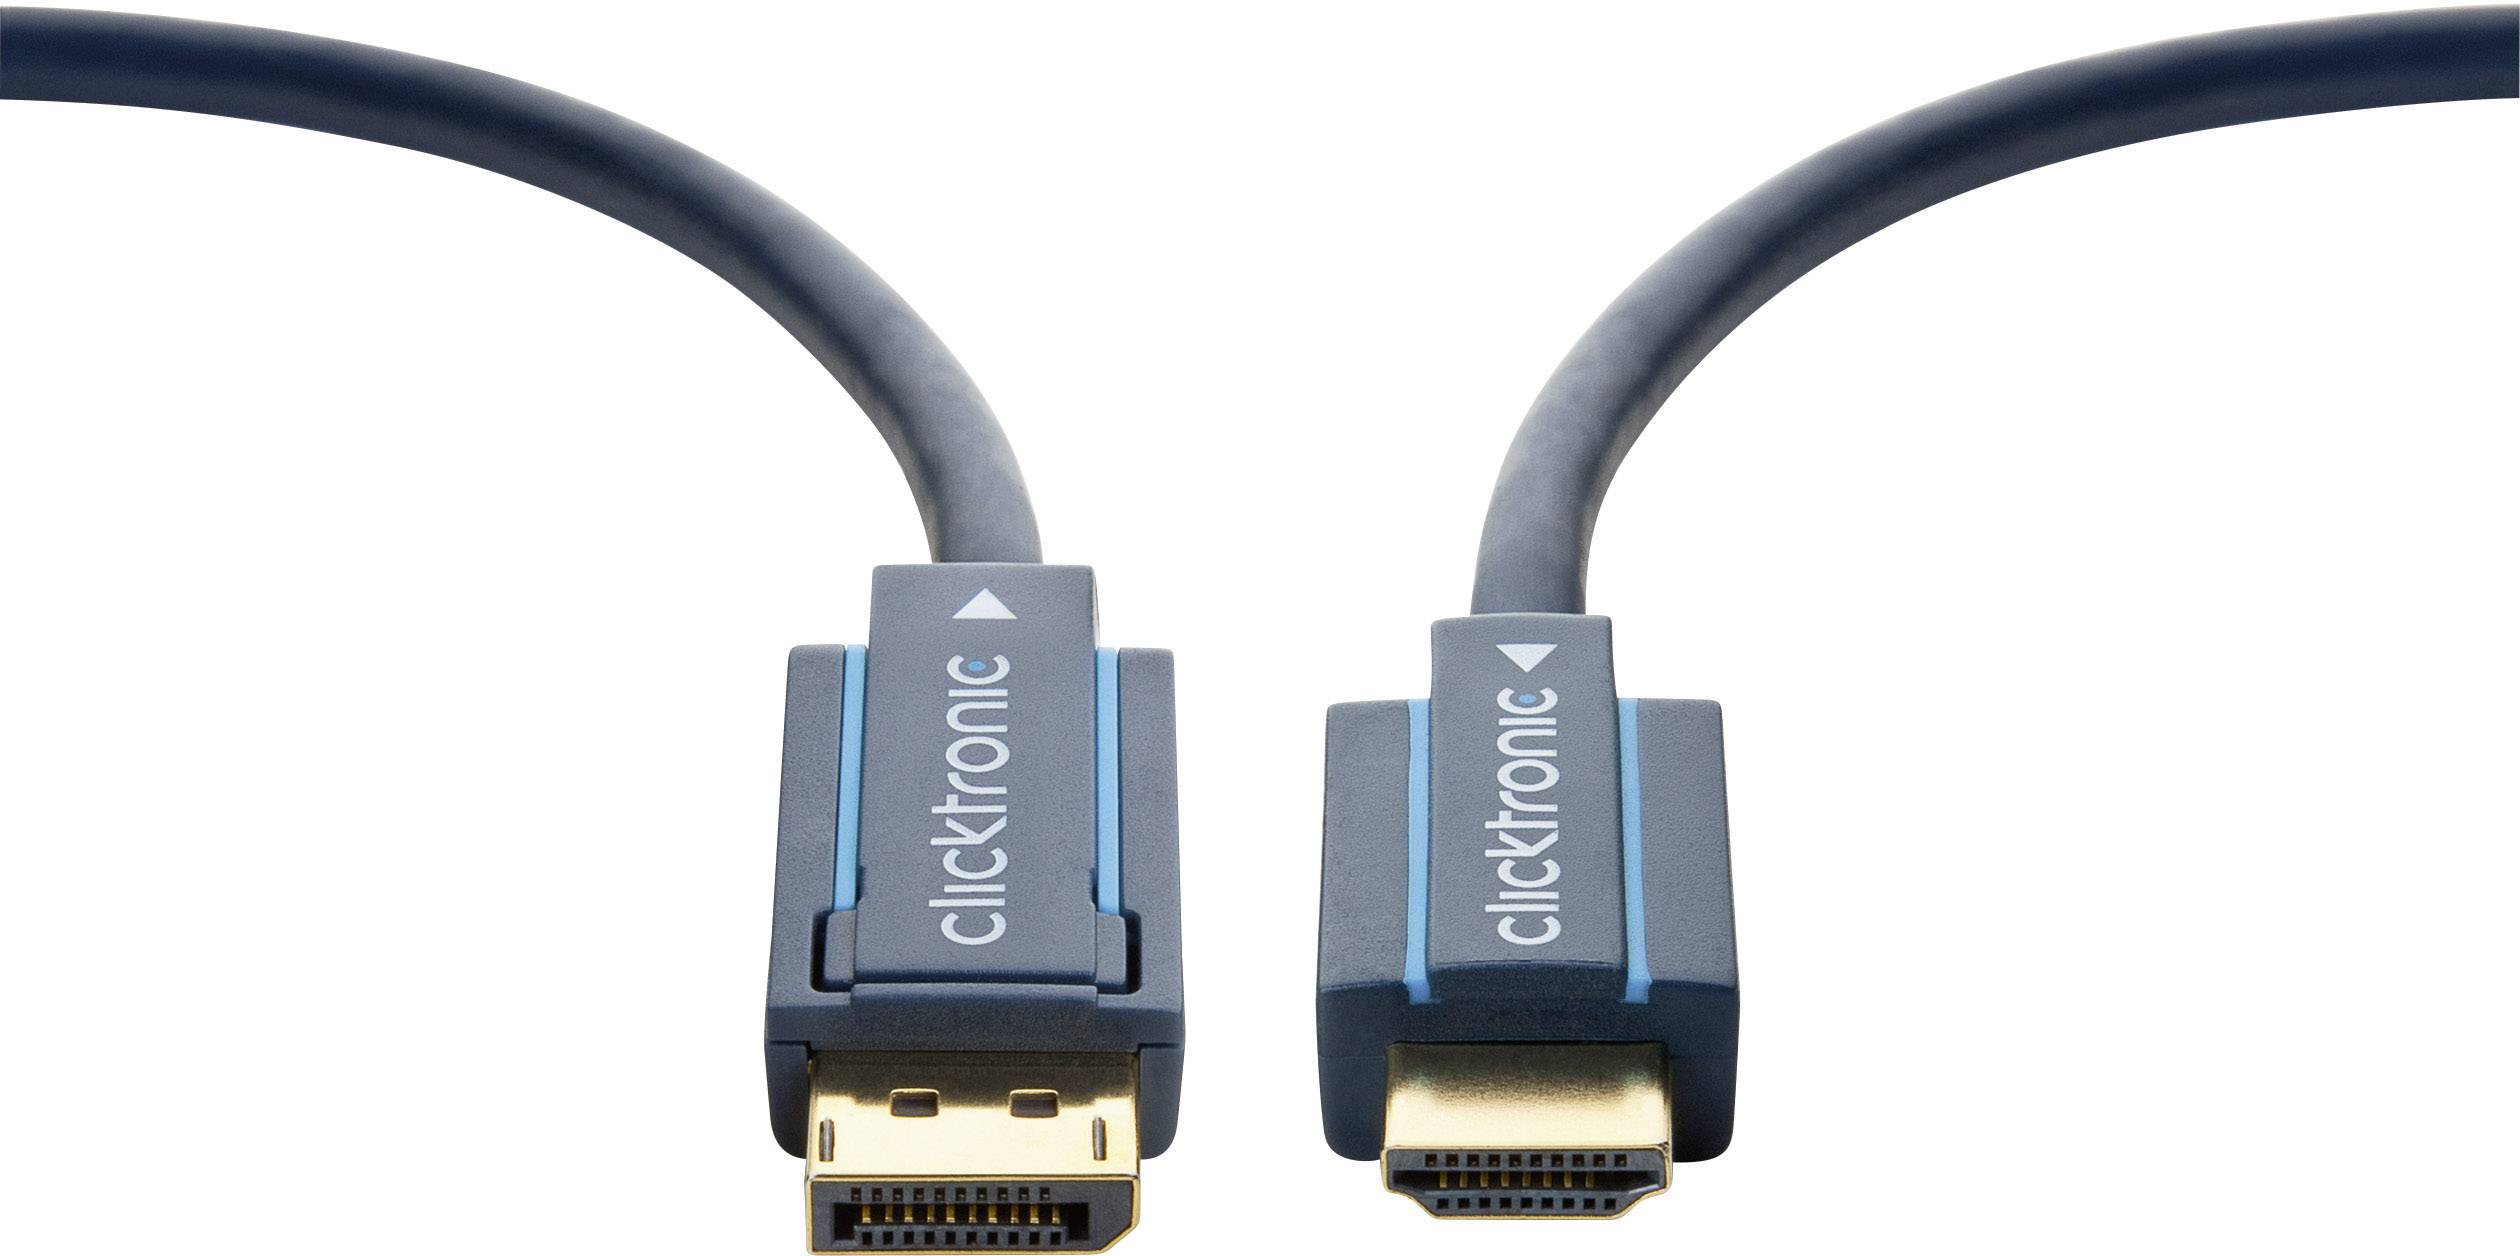 Noodlottig roze kleding clicktronic DisplayPort / HDMI Cable 2.00 m Blue 70720 gold plated  connectors | Conrad.com